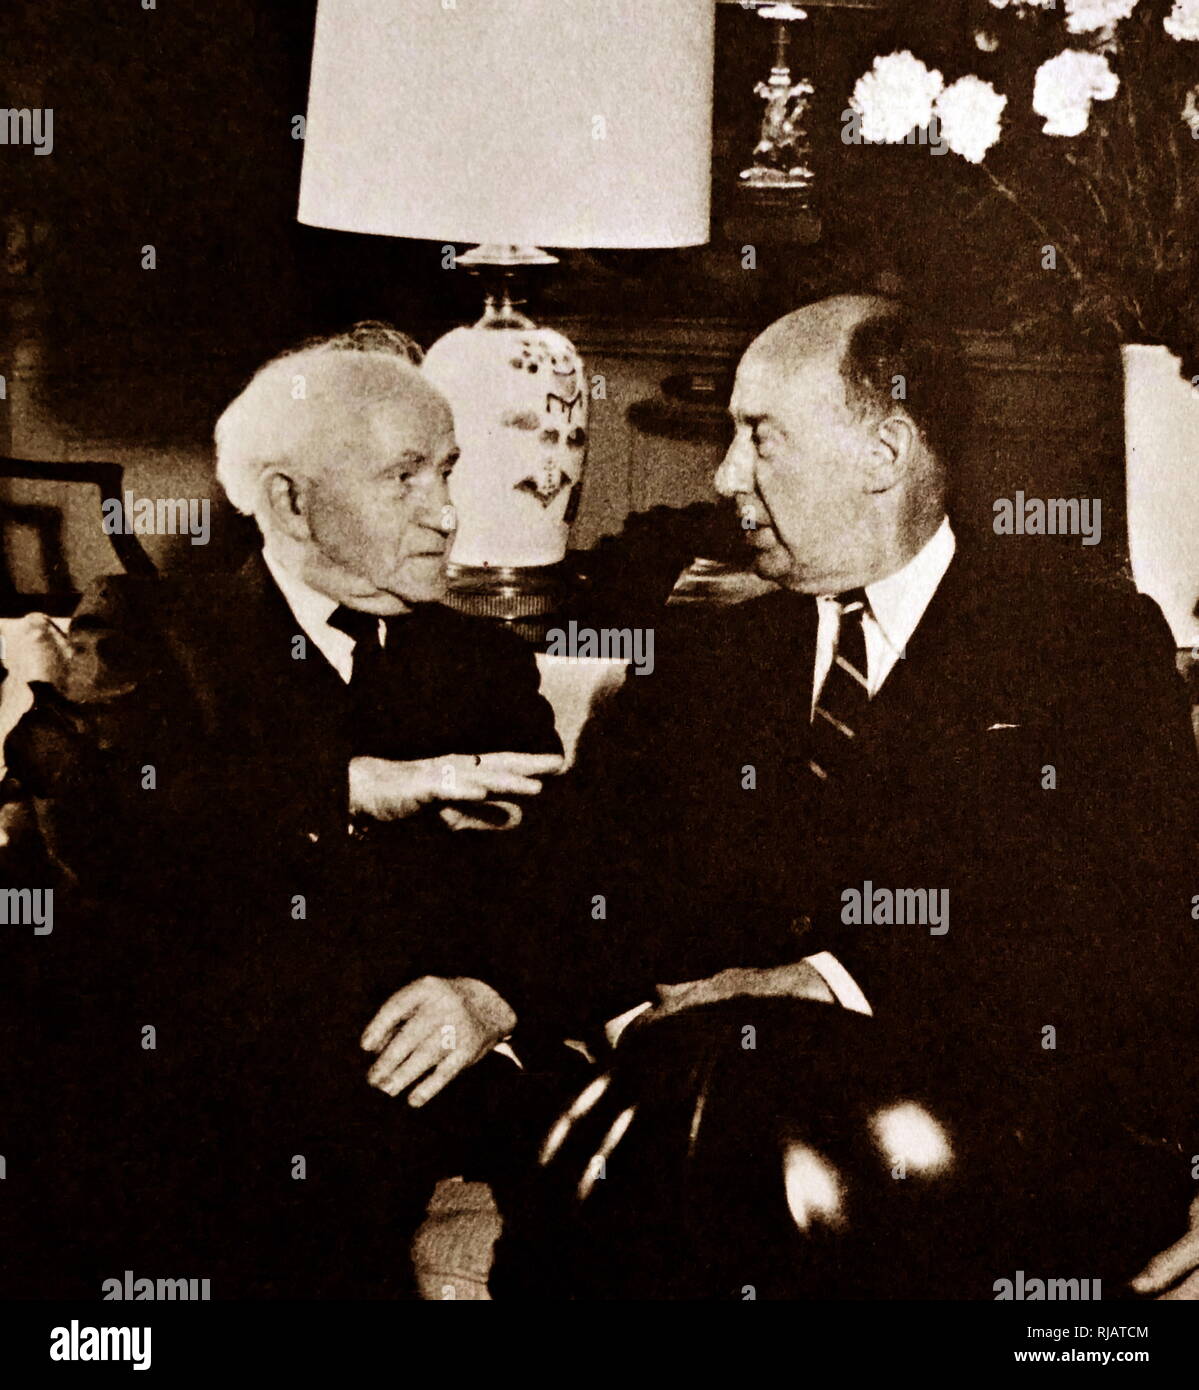 Israël Le premier ministre David Ben Gourion Adlai Stevenson rencontre à New York en 1961. Stevenson (1900 - 1965) était un avocat, homme politique et diplomate. David Ben Gourion (1886 - 1973), homme politique israélien et premier premier ministre d'Israël. Banque D'Images